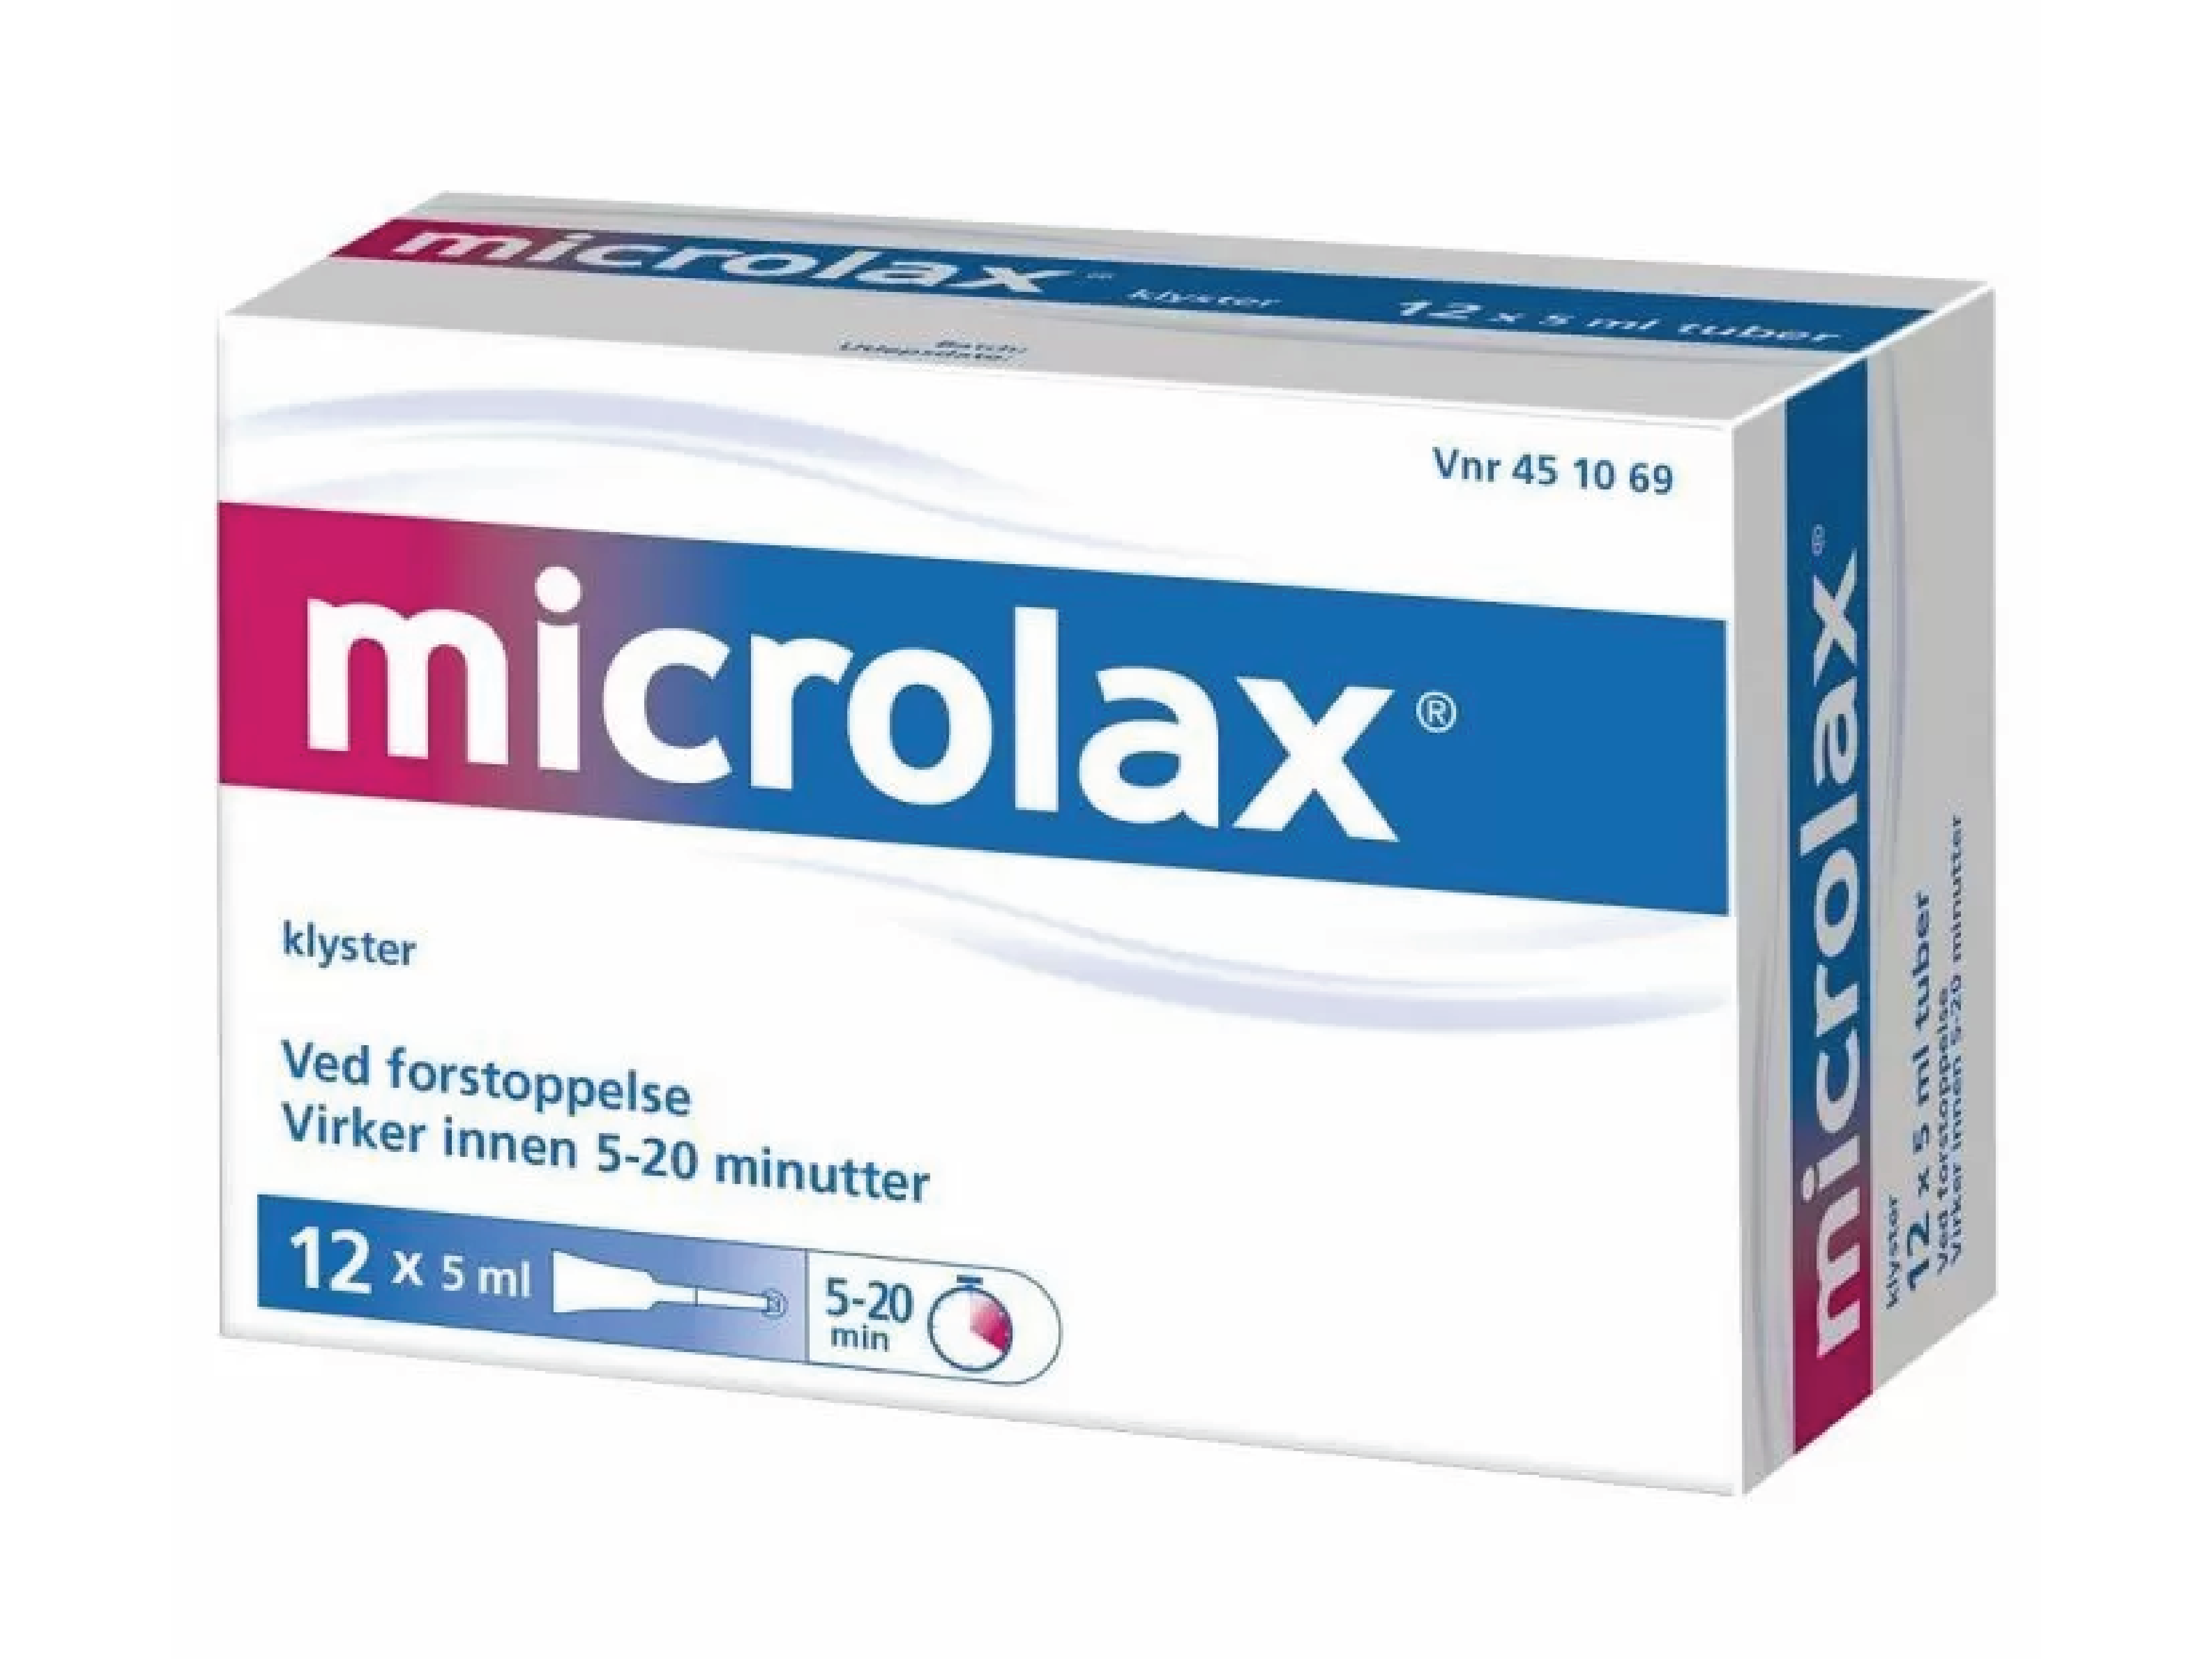 Microlax Rektalvæske (klyster), 12 x 5 ml